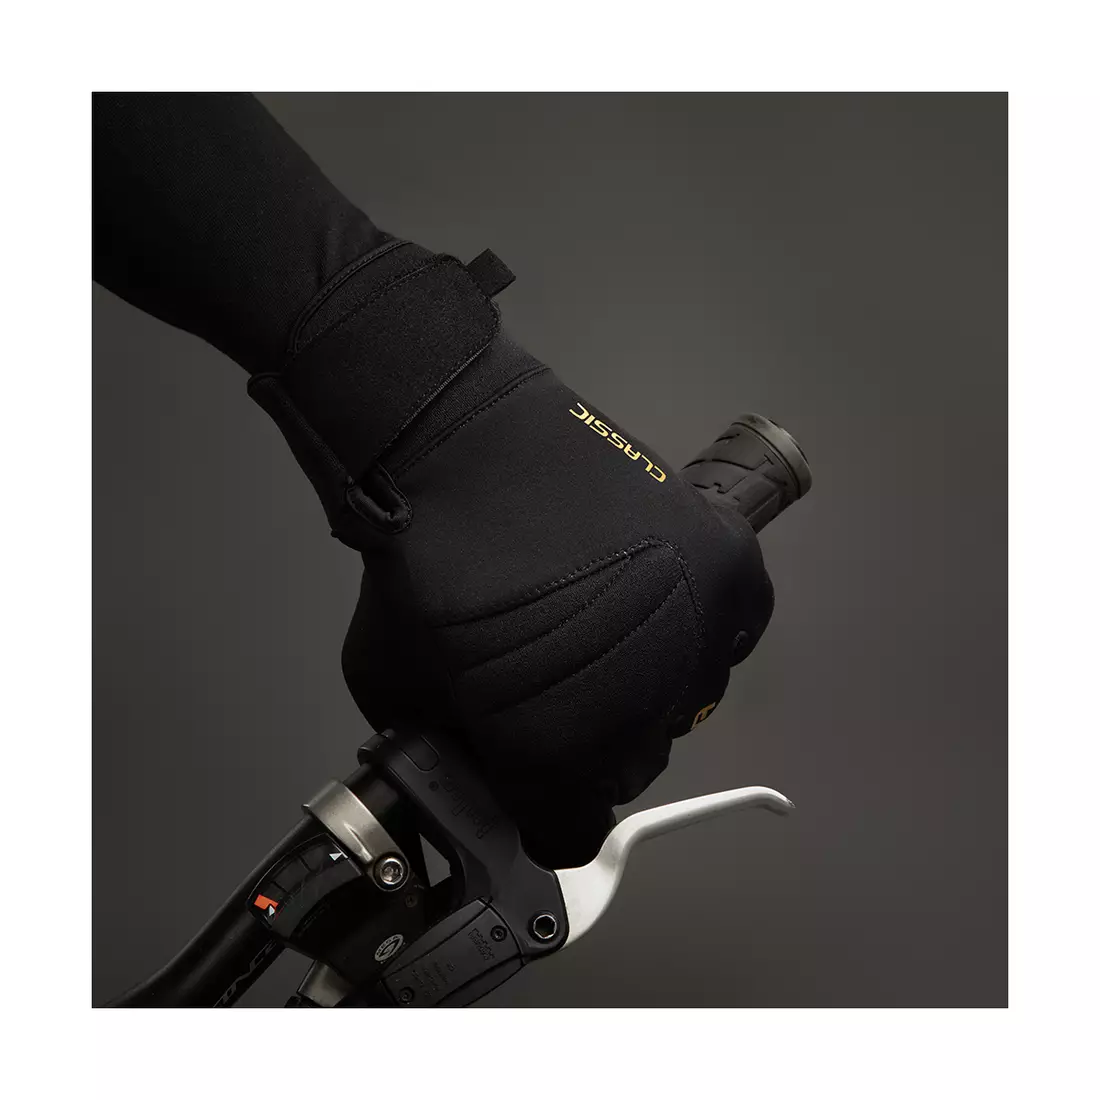 CHIBA CLASSIC zimní cyklistické rukavice, black/gold